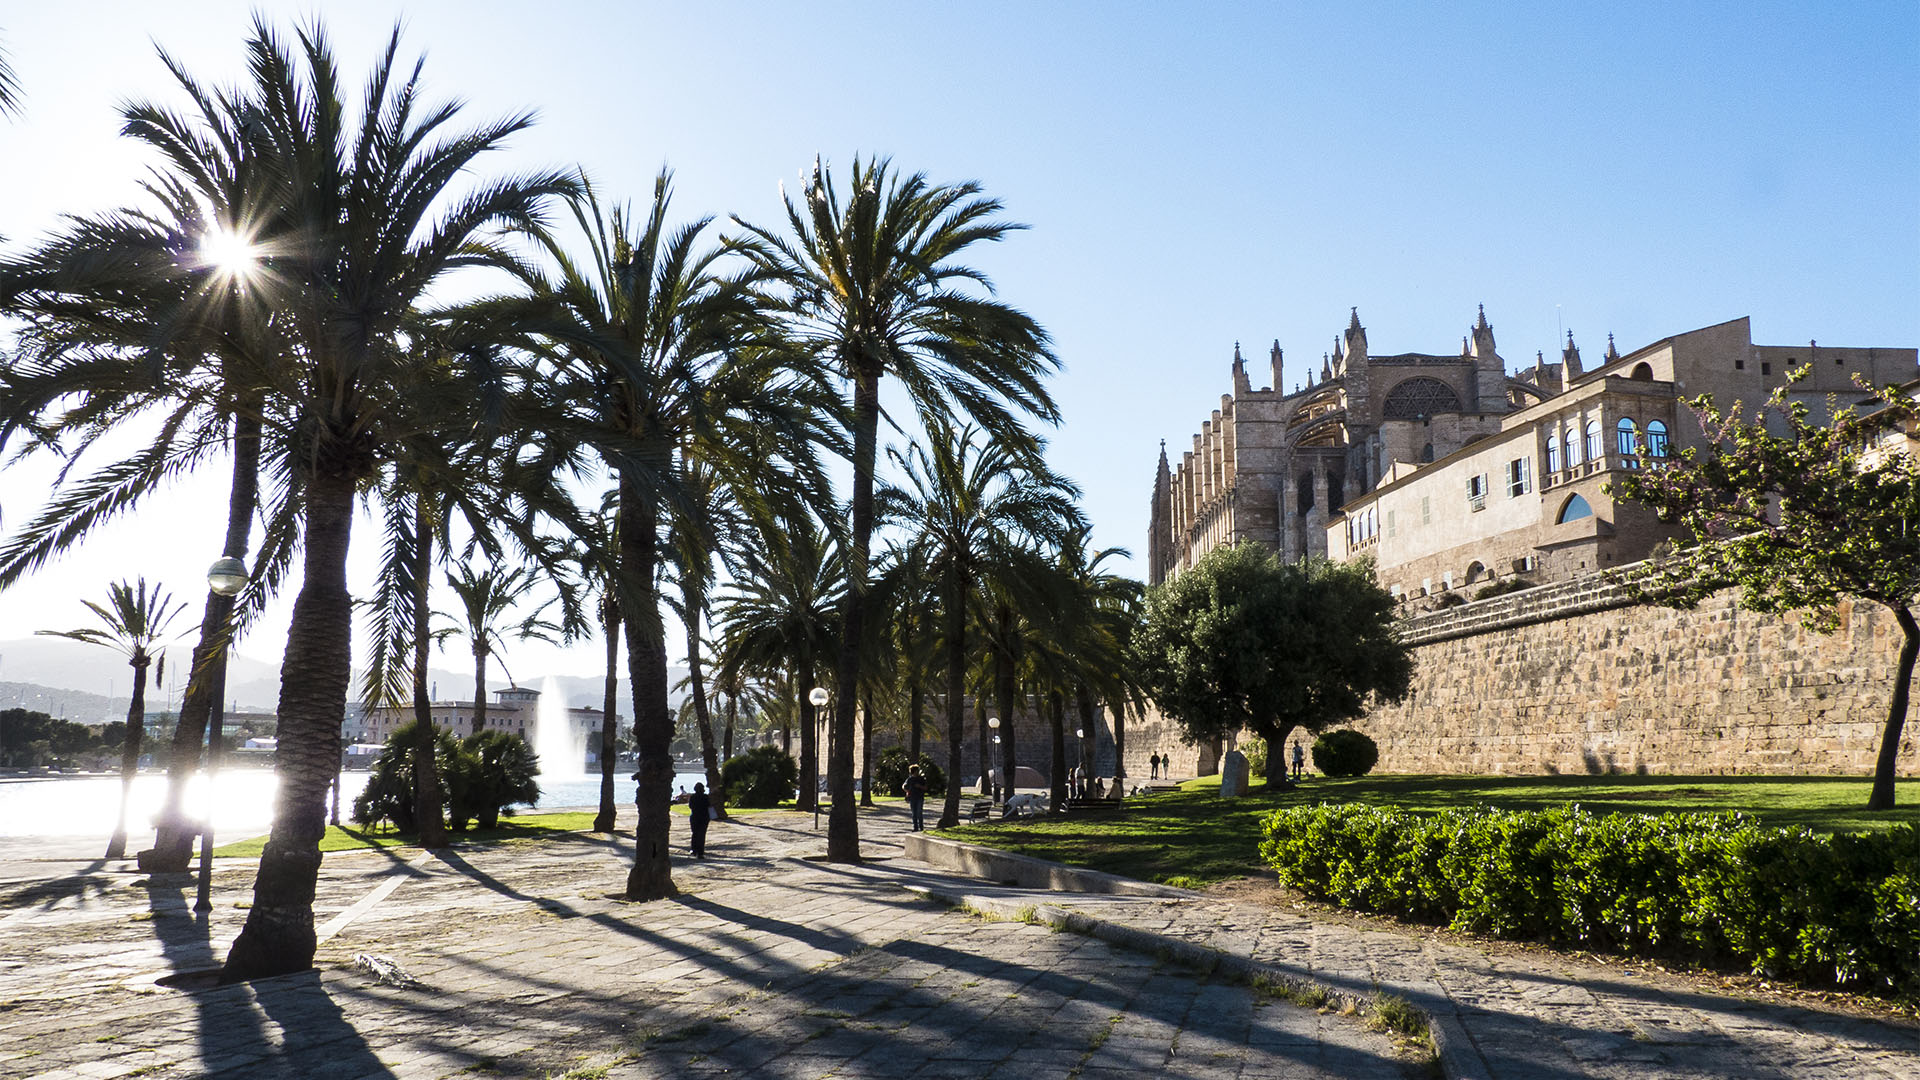 Palma de Mallorca eine geschichtsträchtige, reiche und beeindruckende Stadt.